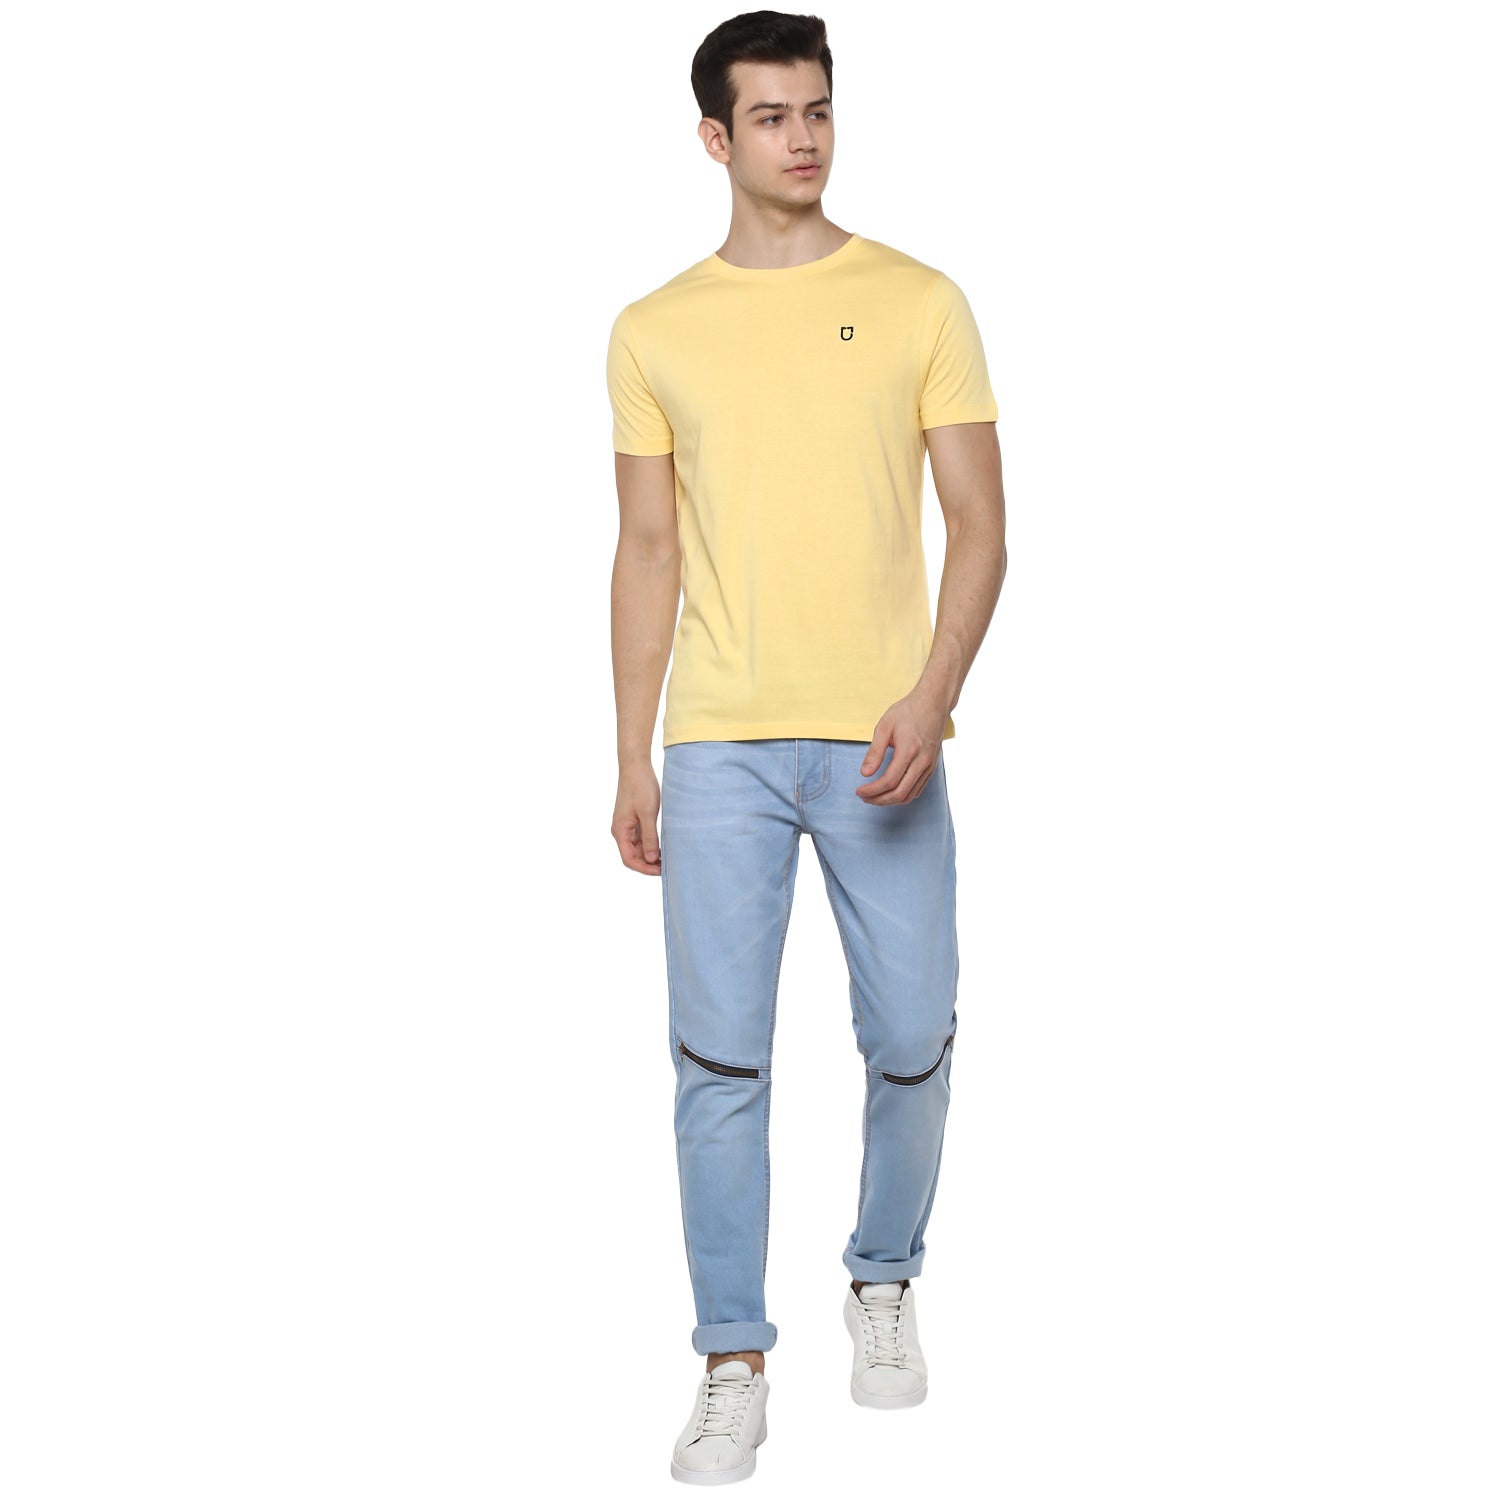 Men's Lemon Yellow Solid Slim Fit Round Neck Cotton T-Shirt